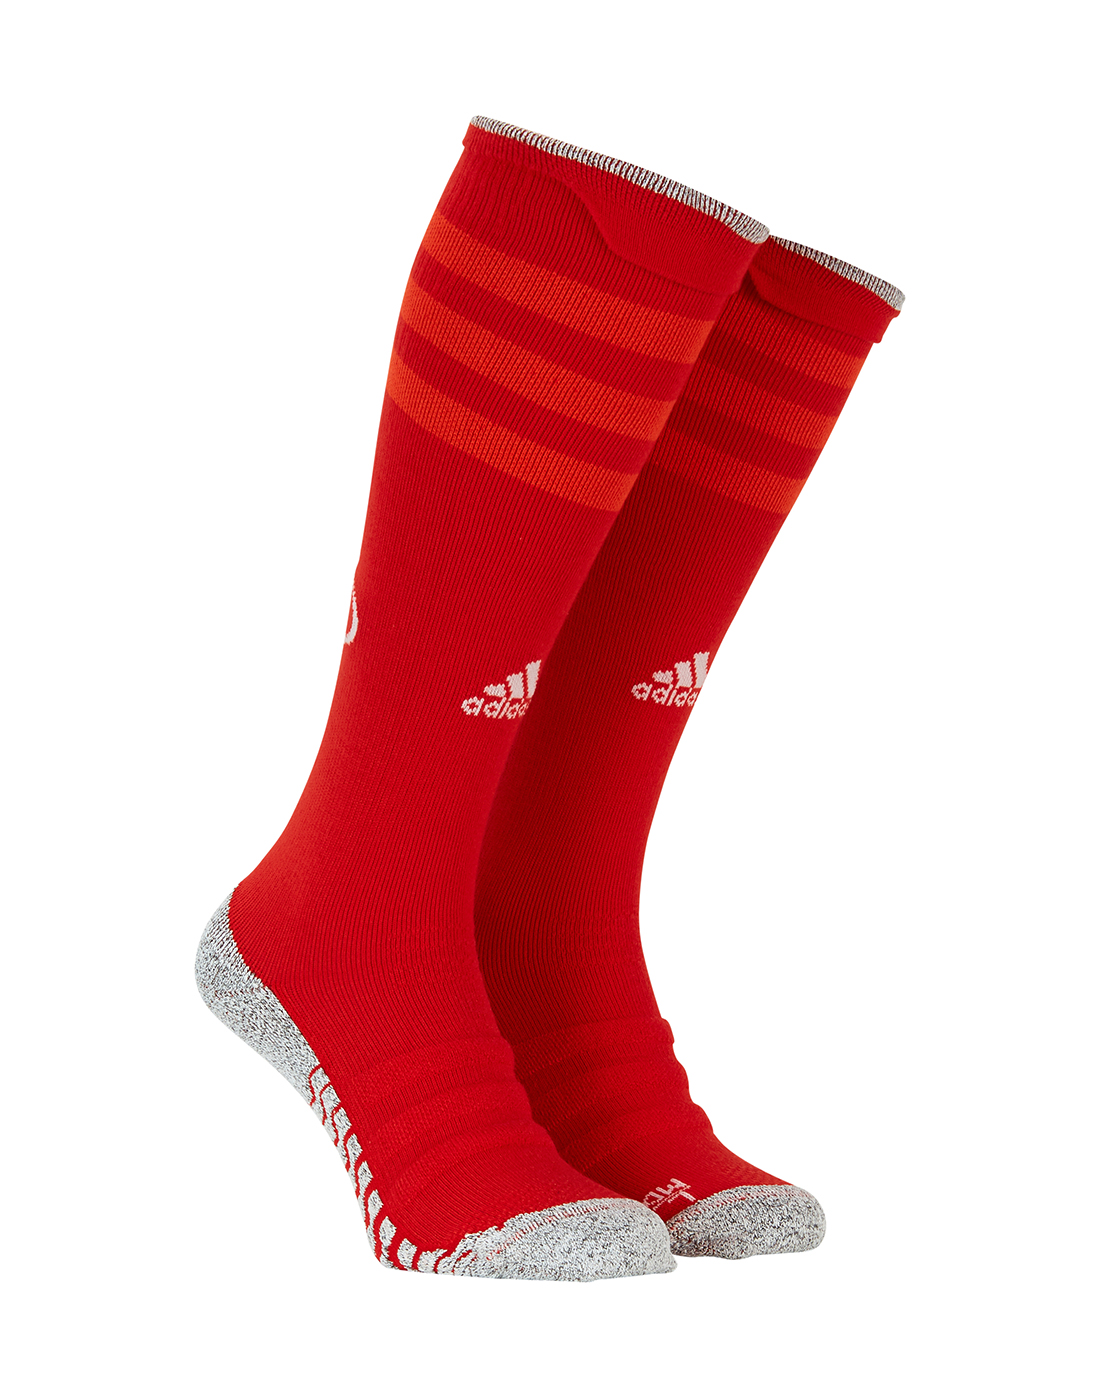 adidas rugby socks